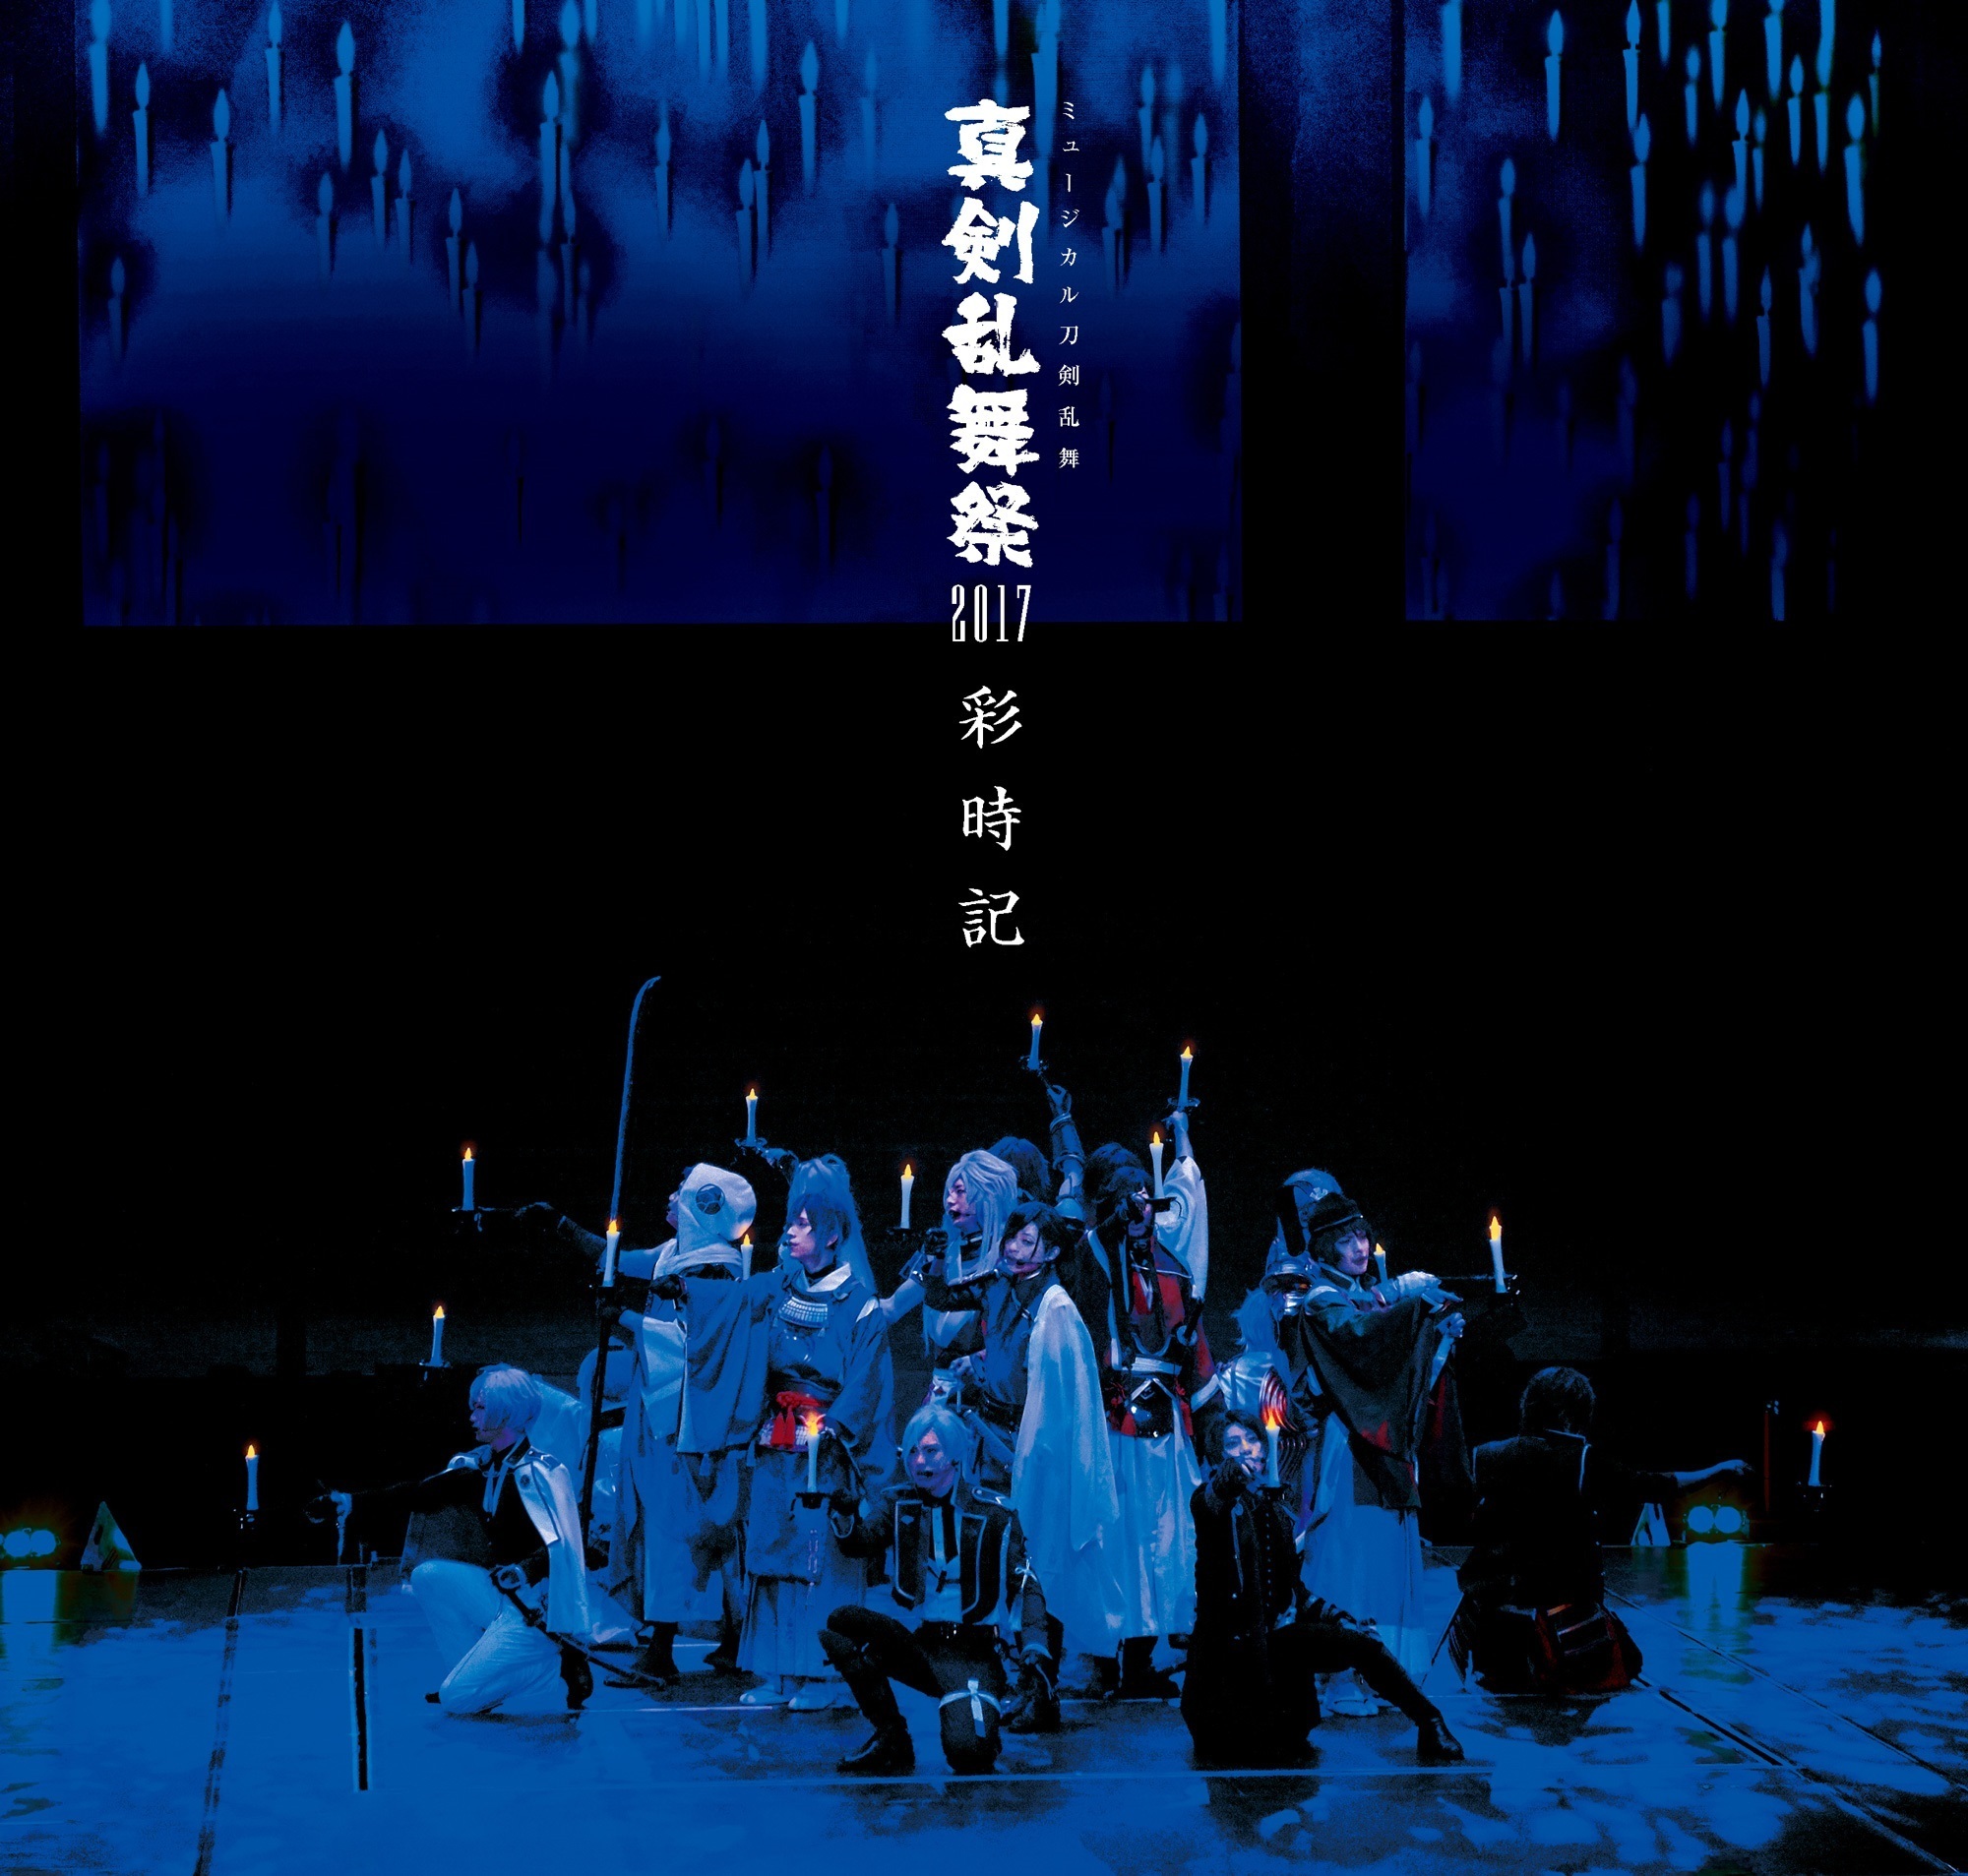 ミュージカル『刀剣乱舞』真剣乱舞祭2017 ミュージカル『刀剣乱舞』公式サイト